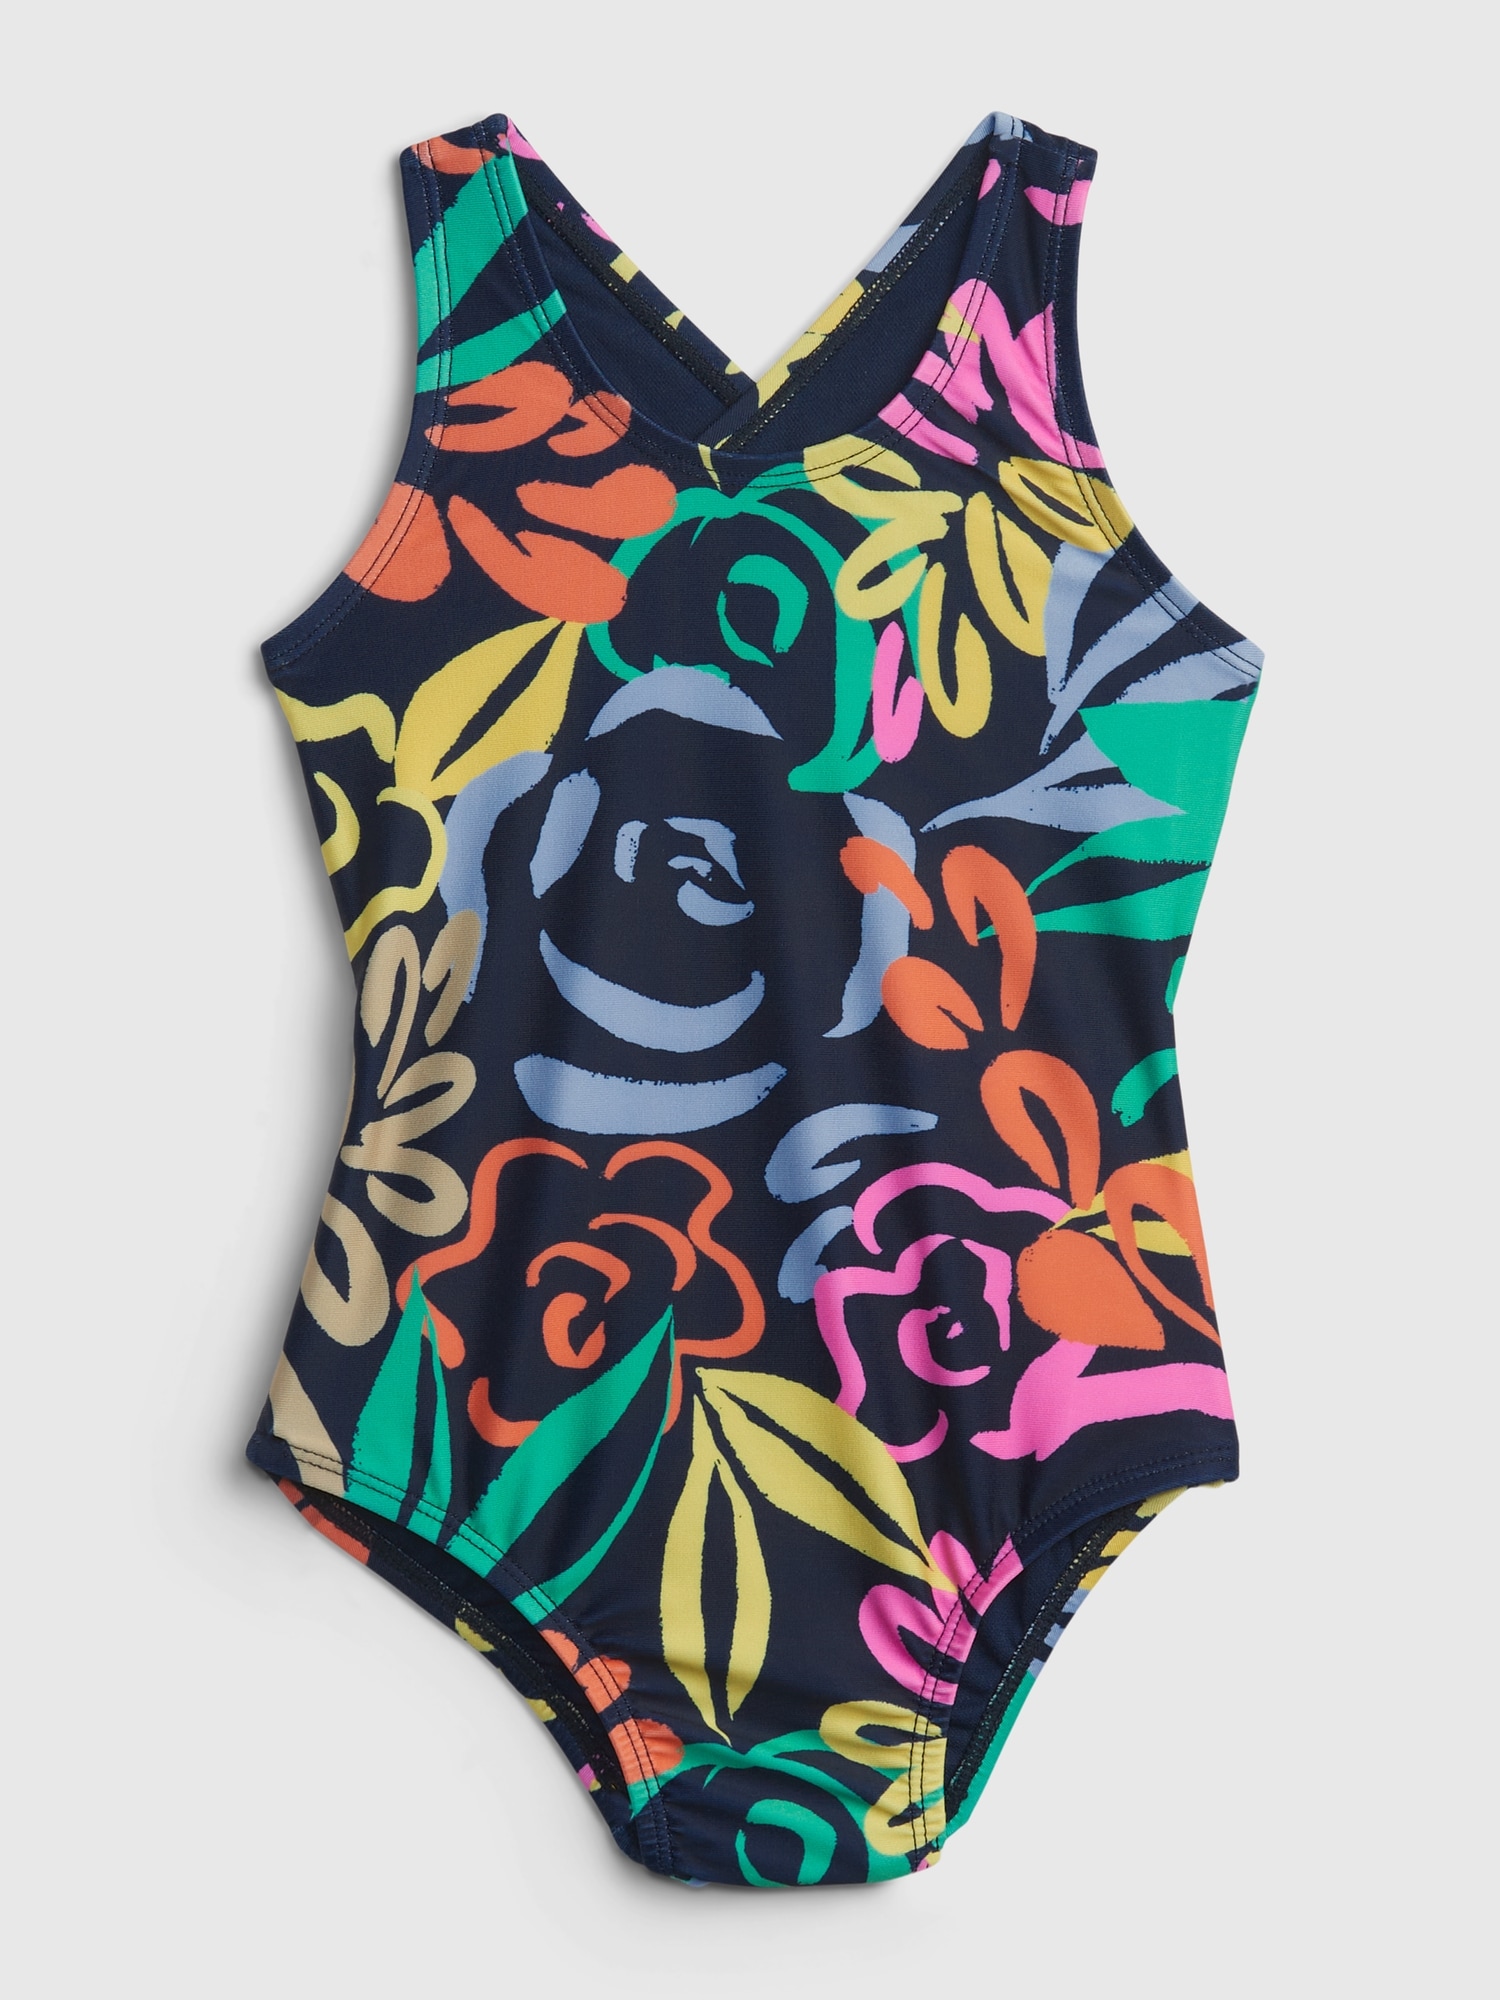 GAP Children's One-piece Swimwear Floral - Girls